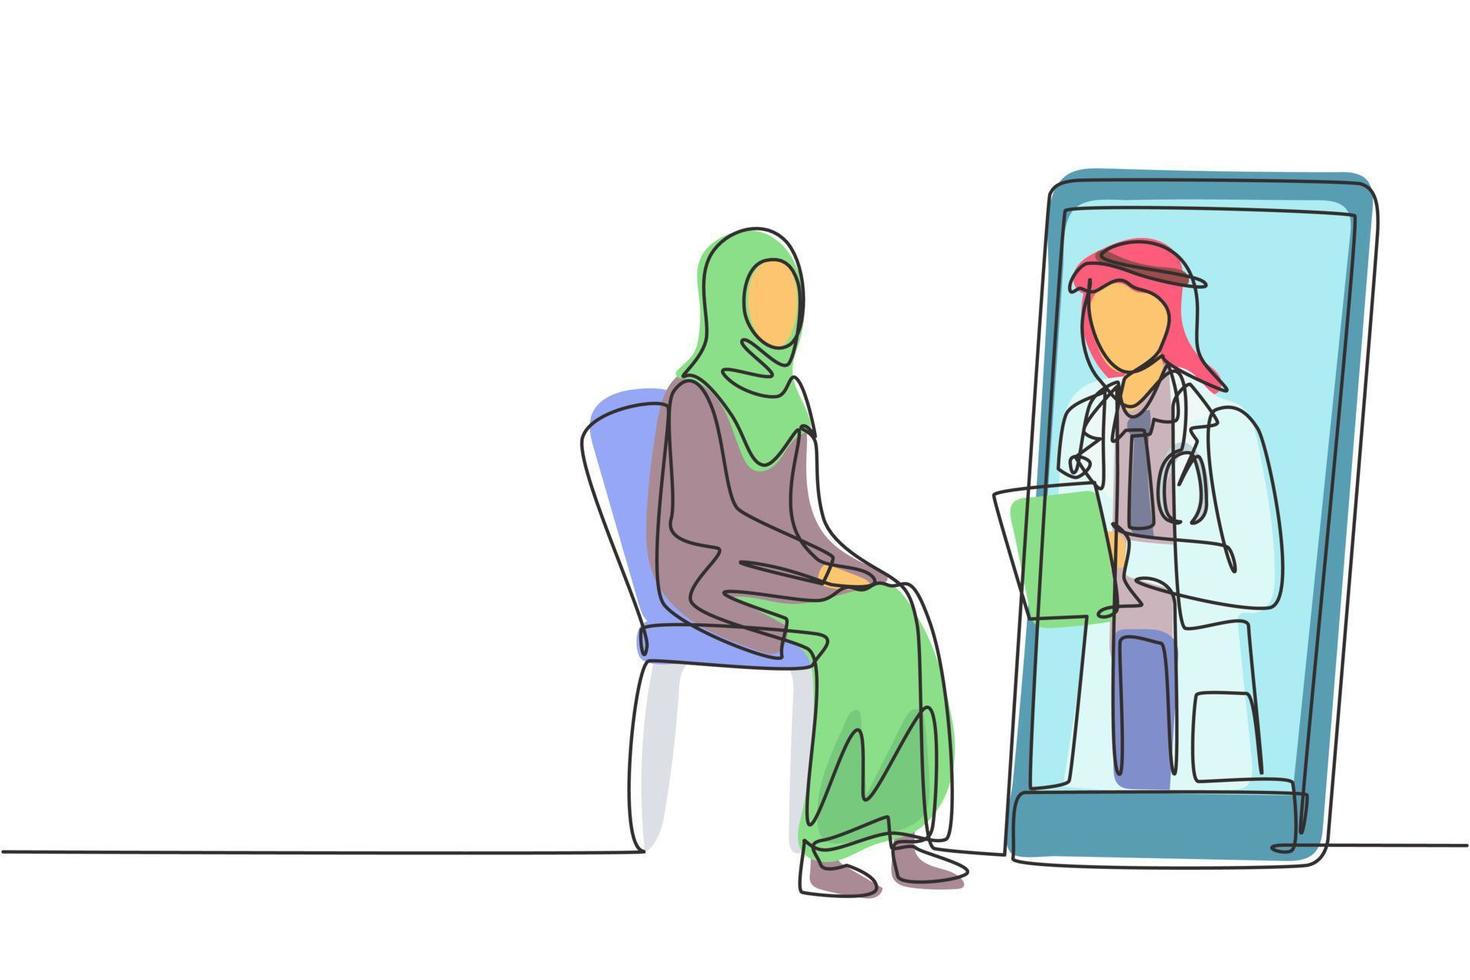 einzelne eine linie zeichnung arabischer männlicher arzt, der klemmbrett hält, um den zustand der weiblichen patientin zu überprüfen, die auf dem stuhl sitzt. Online-Beratung. moderne durchgehende Linie zeichnen Design-Grafik-Vektor-Illustration vektor